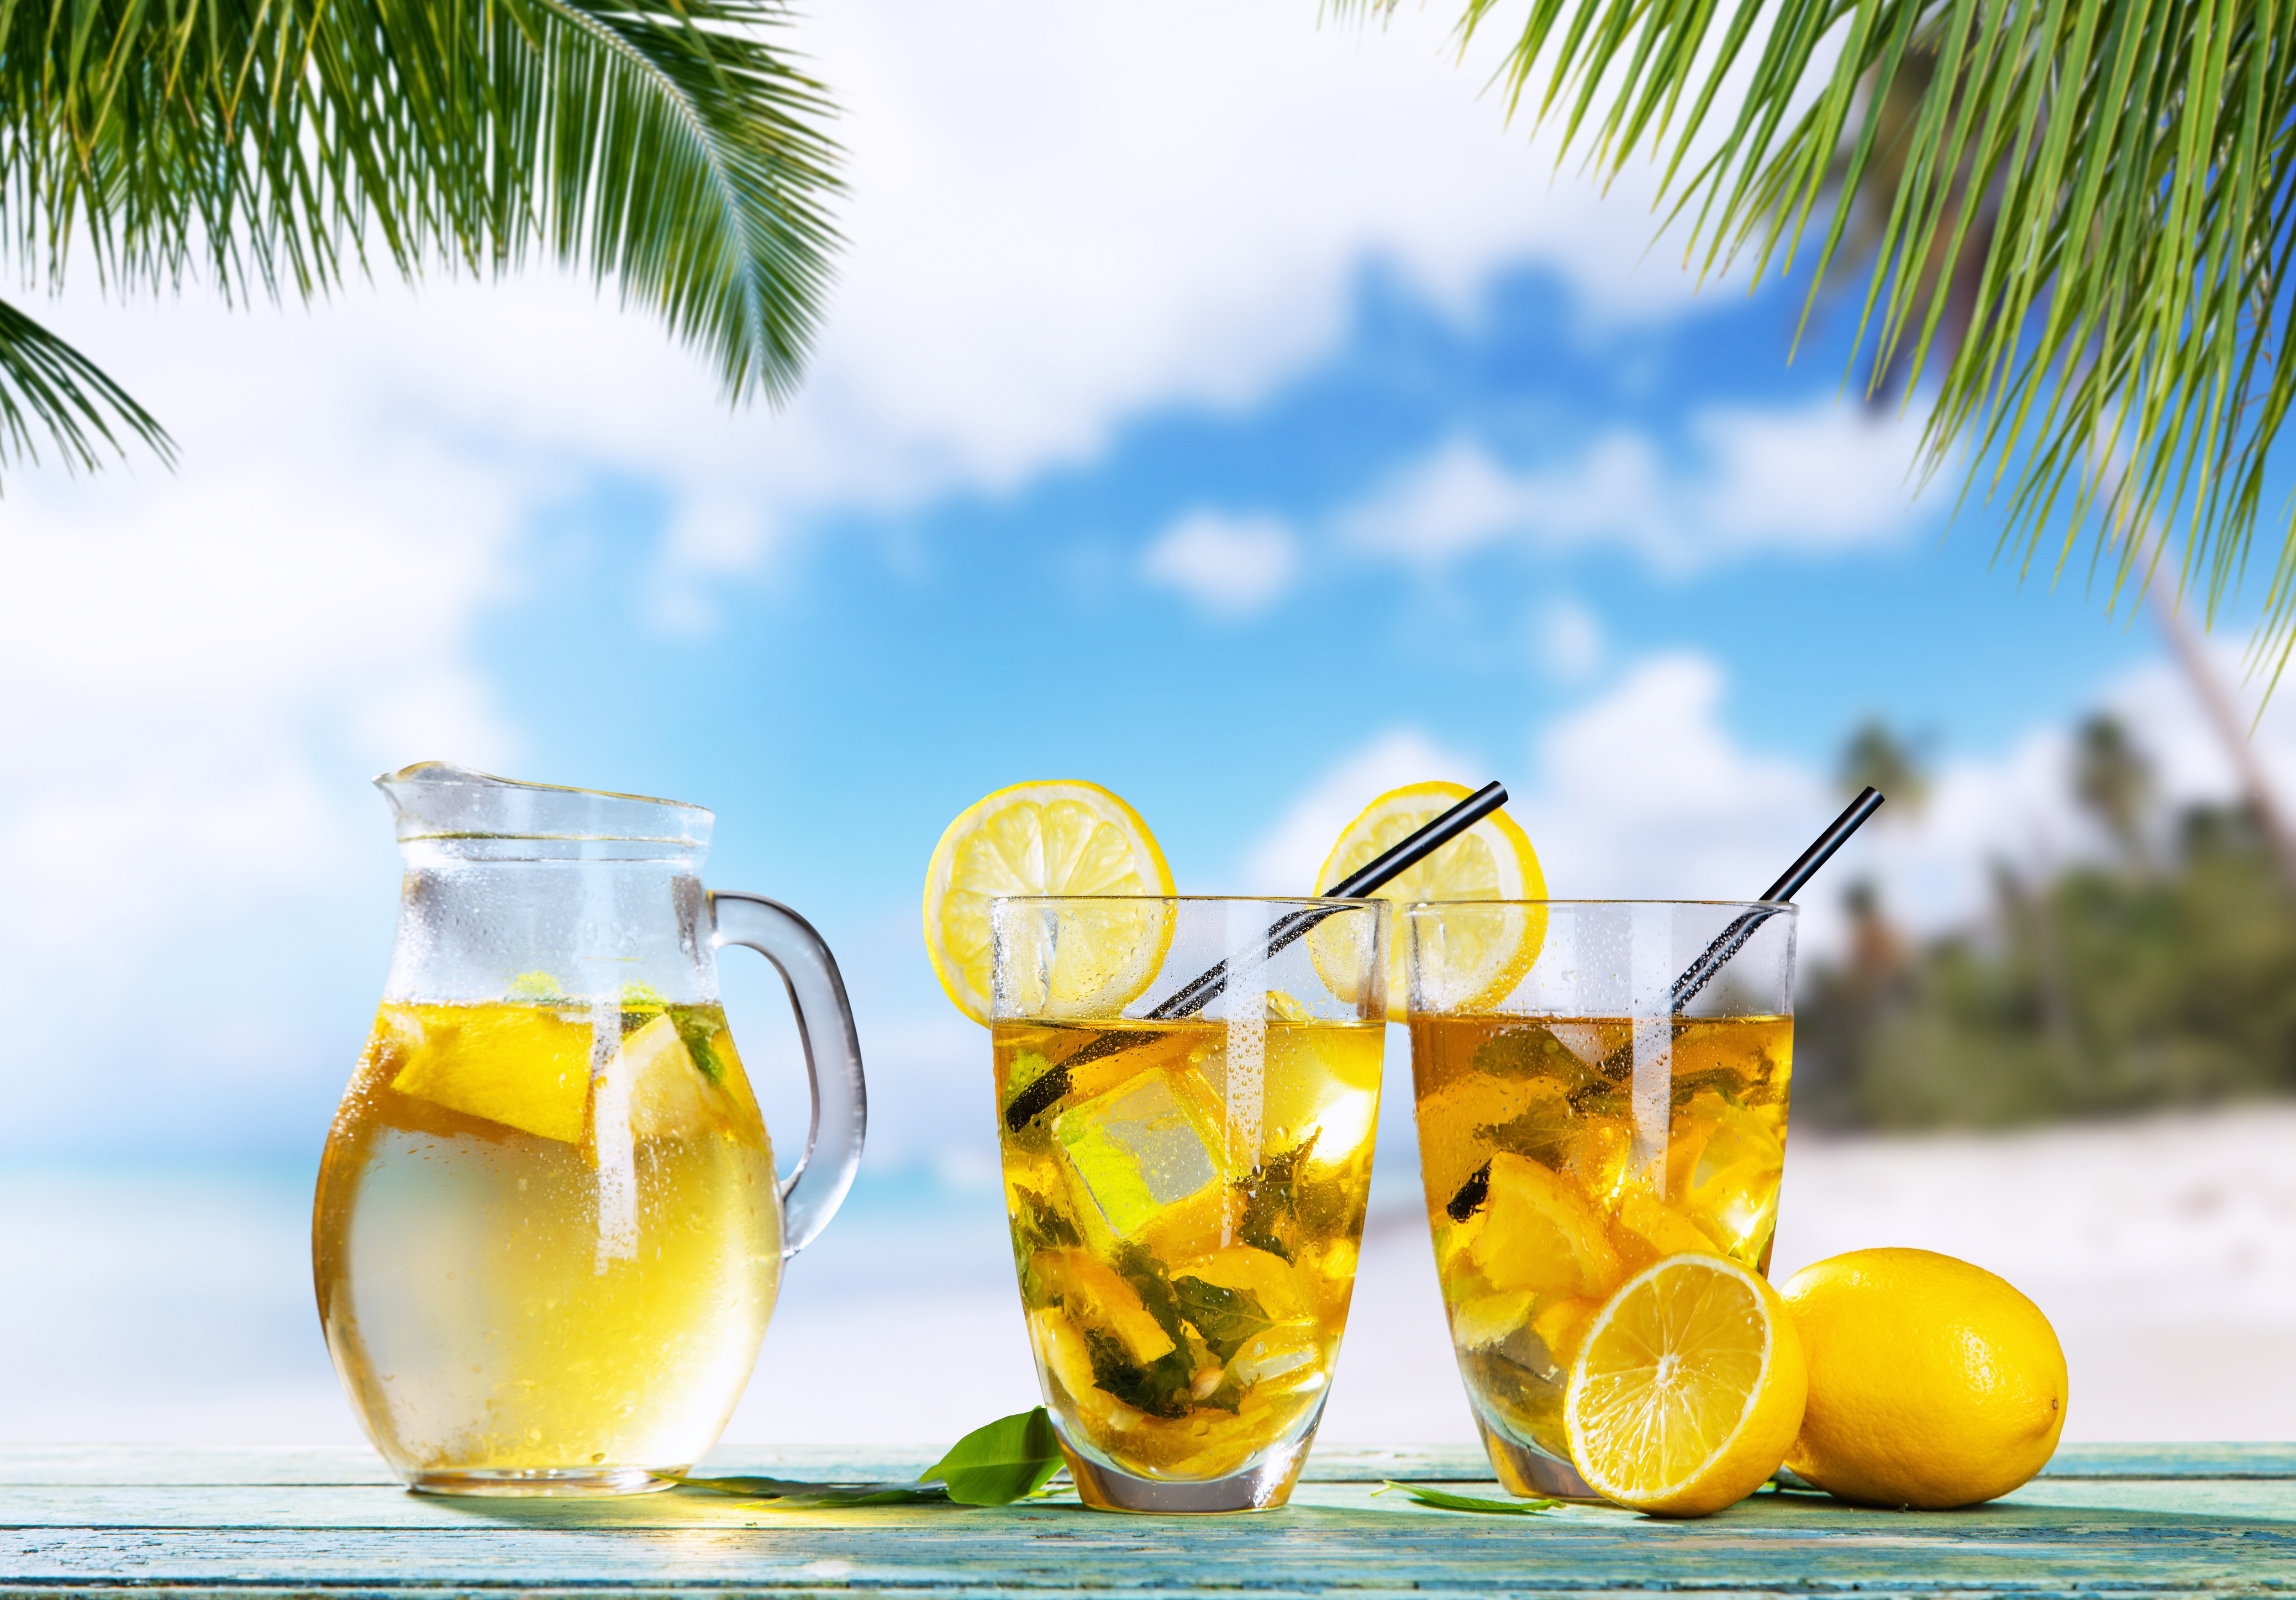 Summer Lemon Lemonade Glass 4156x2896